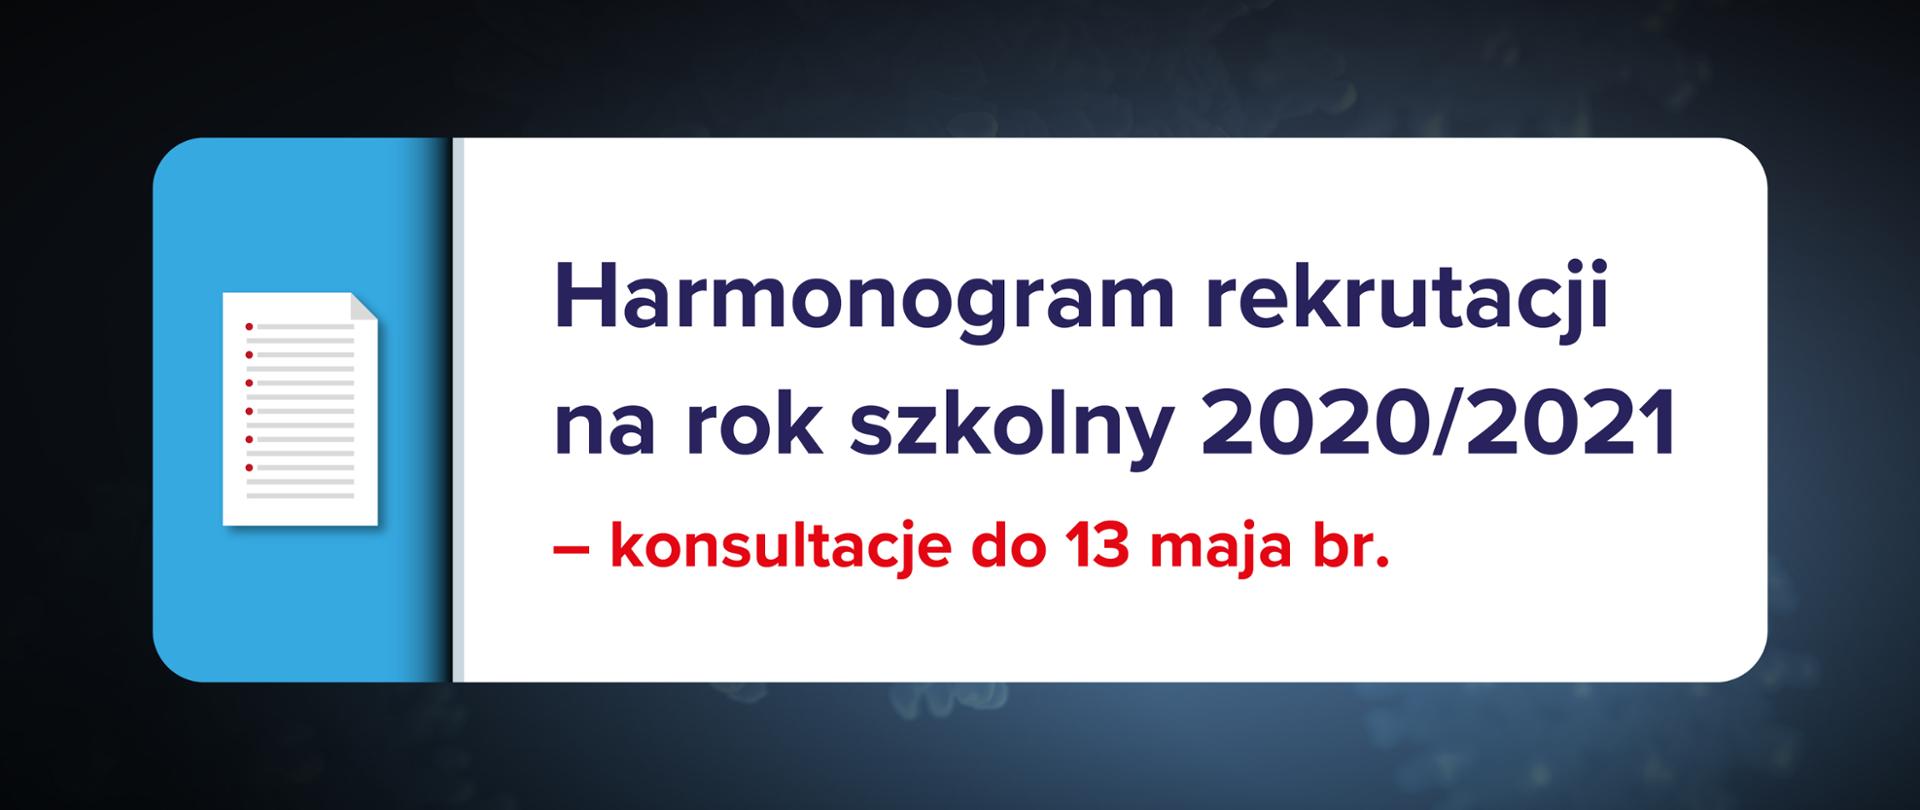 Ciemnogranatowe tło z ikoną kartki z listą po lewo oraz tekstem na białym tle po prawo: "Harmonogram rekrutacji na rok szkolny 2020/2021 – konsultacje do 13 maja br."